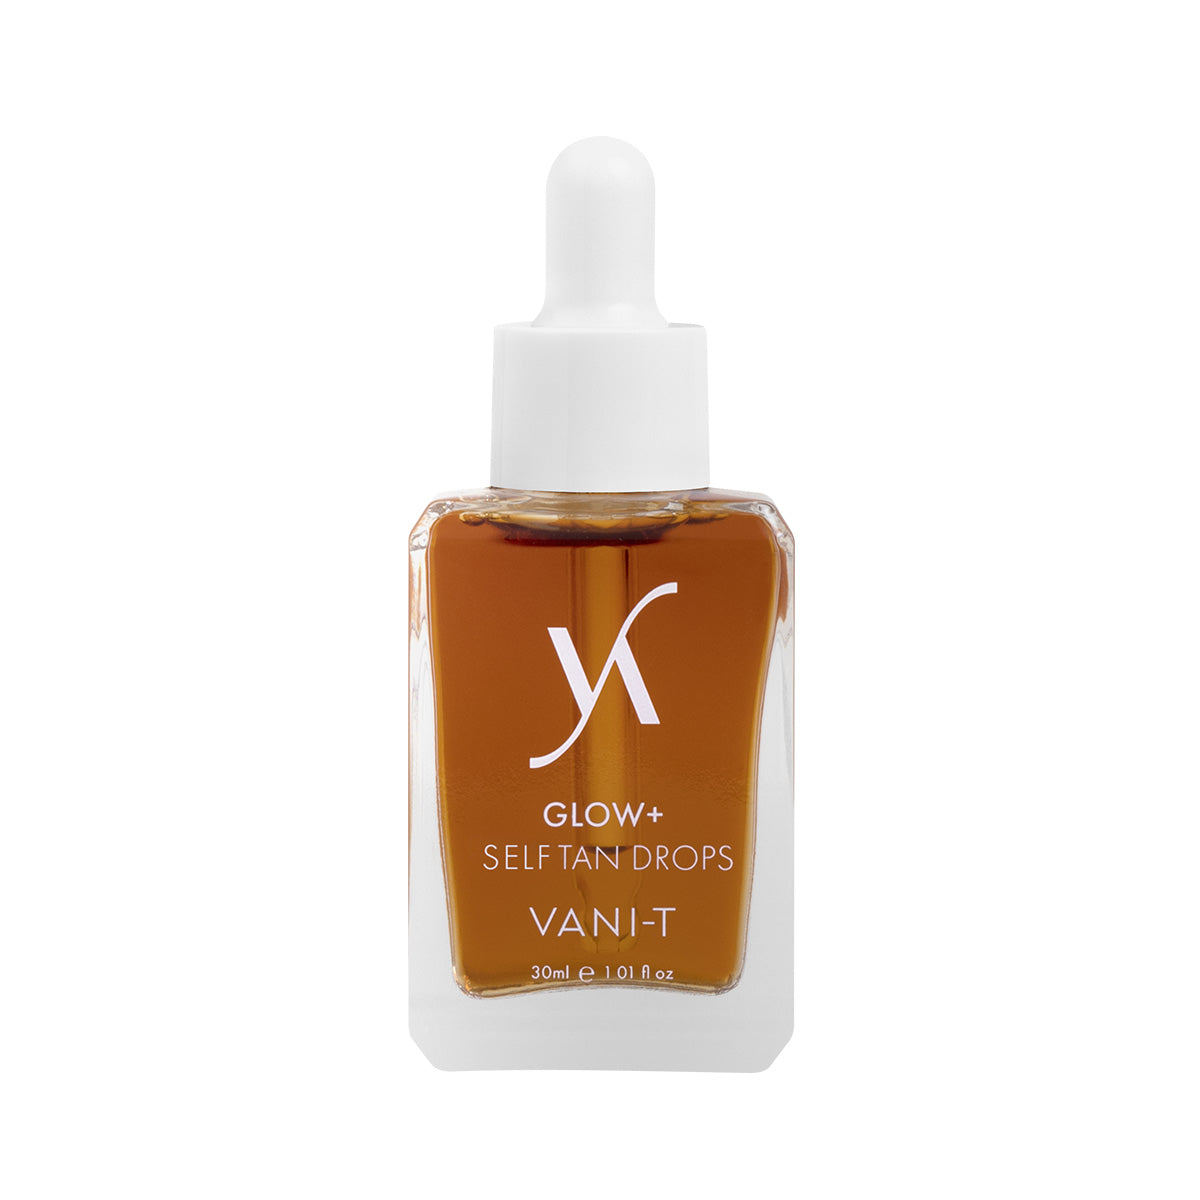 VANI-T Glow+Self Tan Drops 30ml